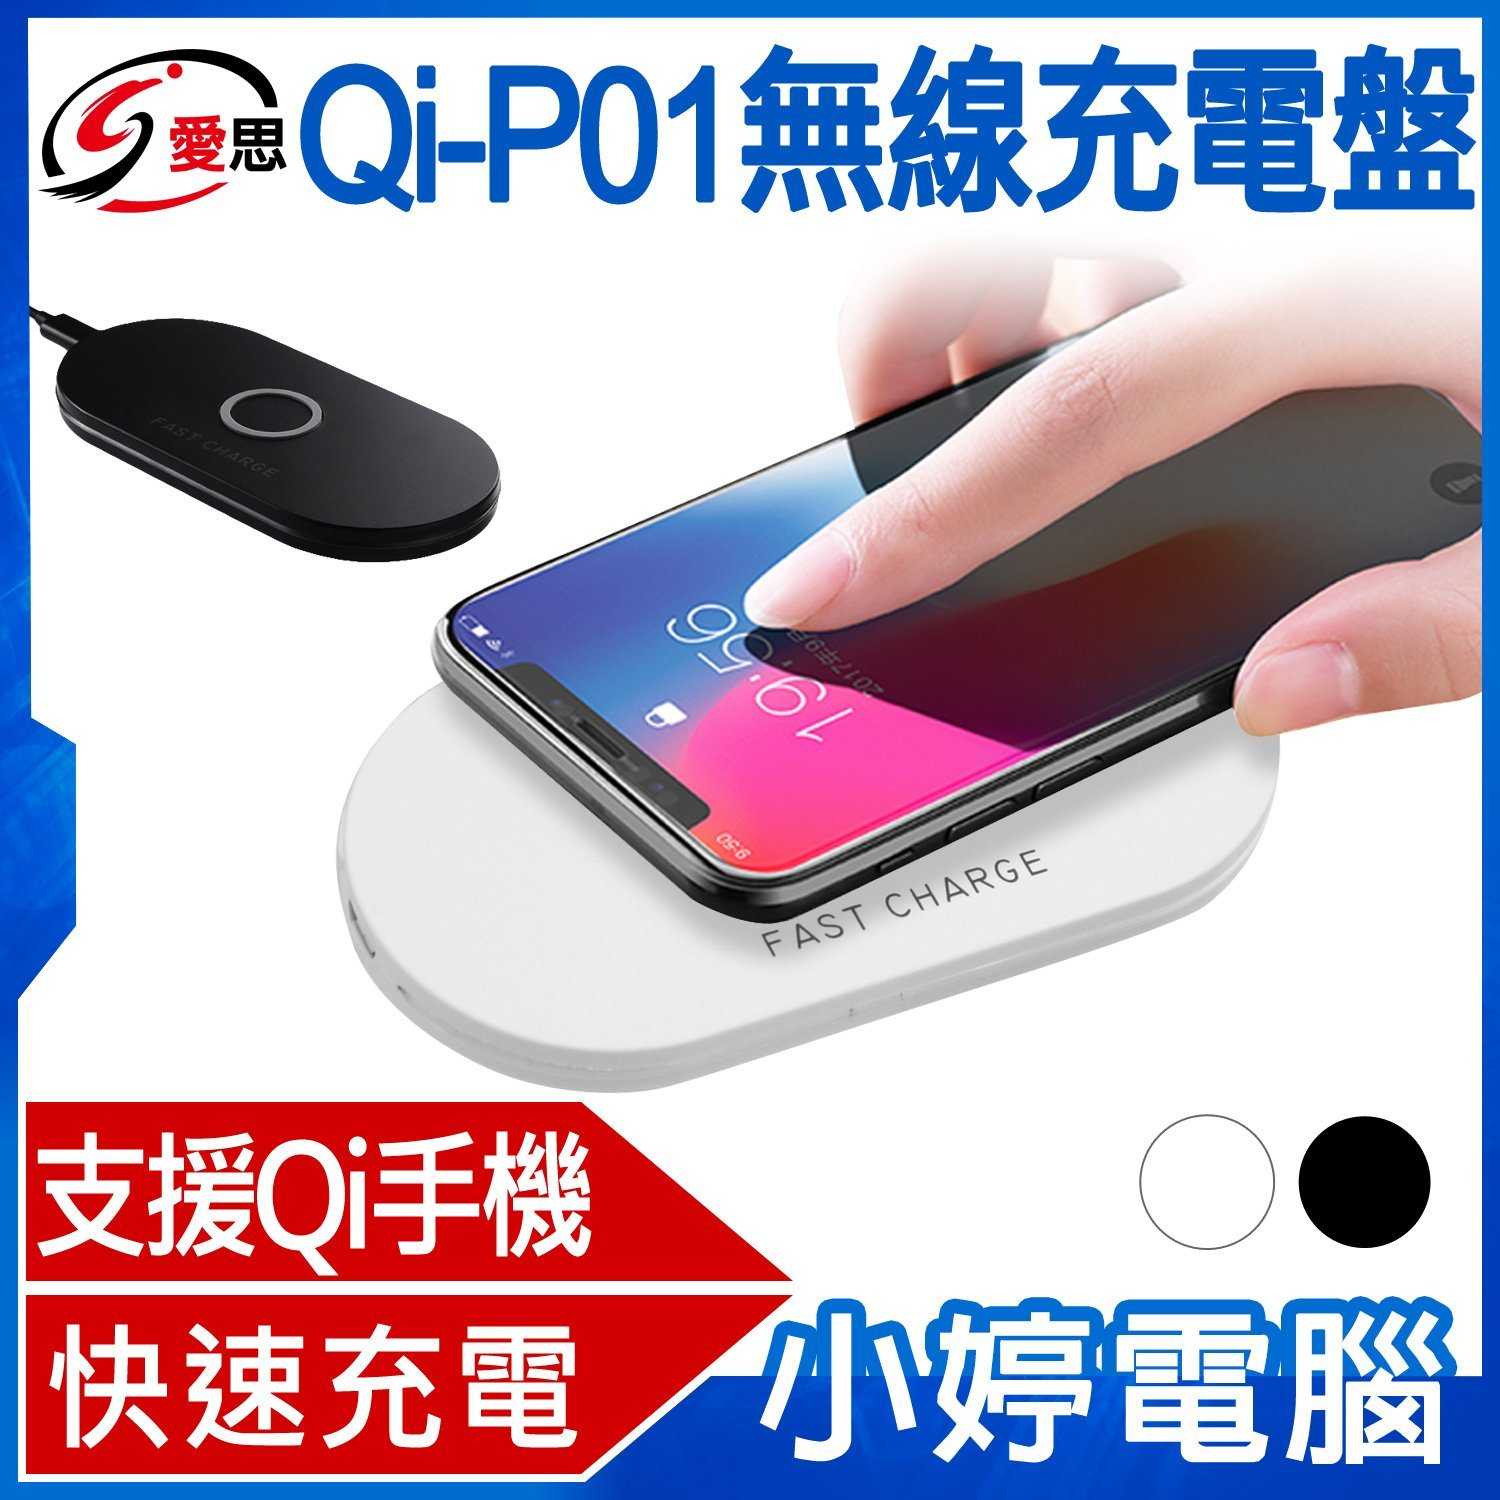 【小婷電腦】Qi-P01無線充電盤 雙線圈快速充電 無線充電器 Qi充電座 Apple 三星